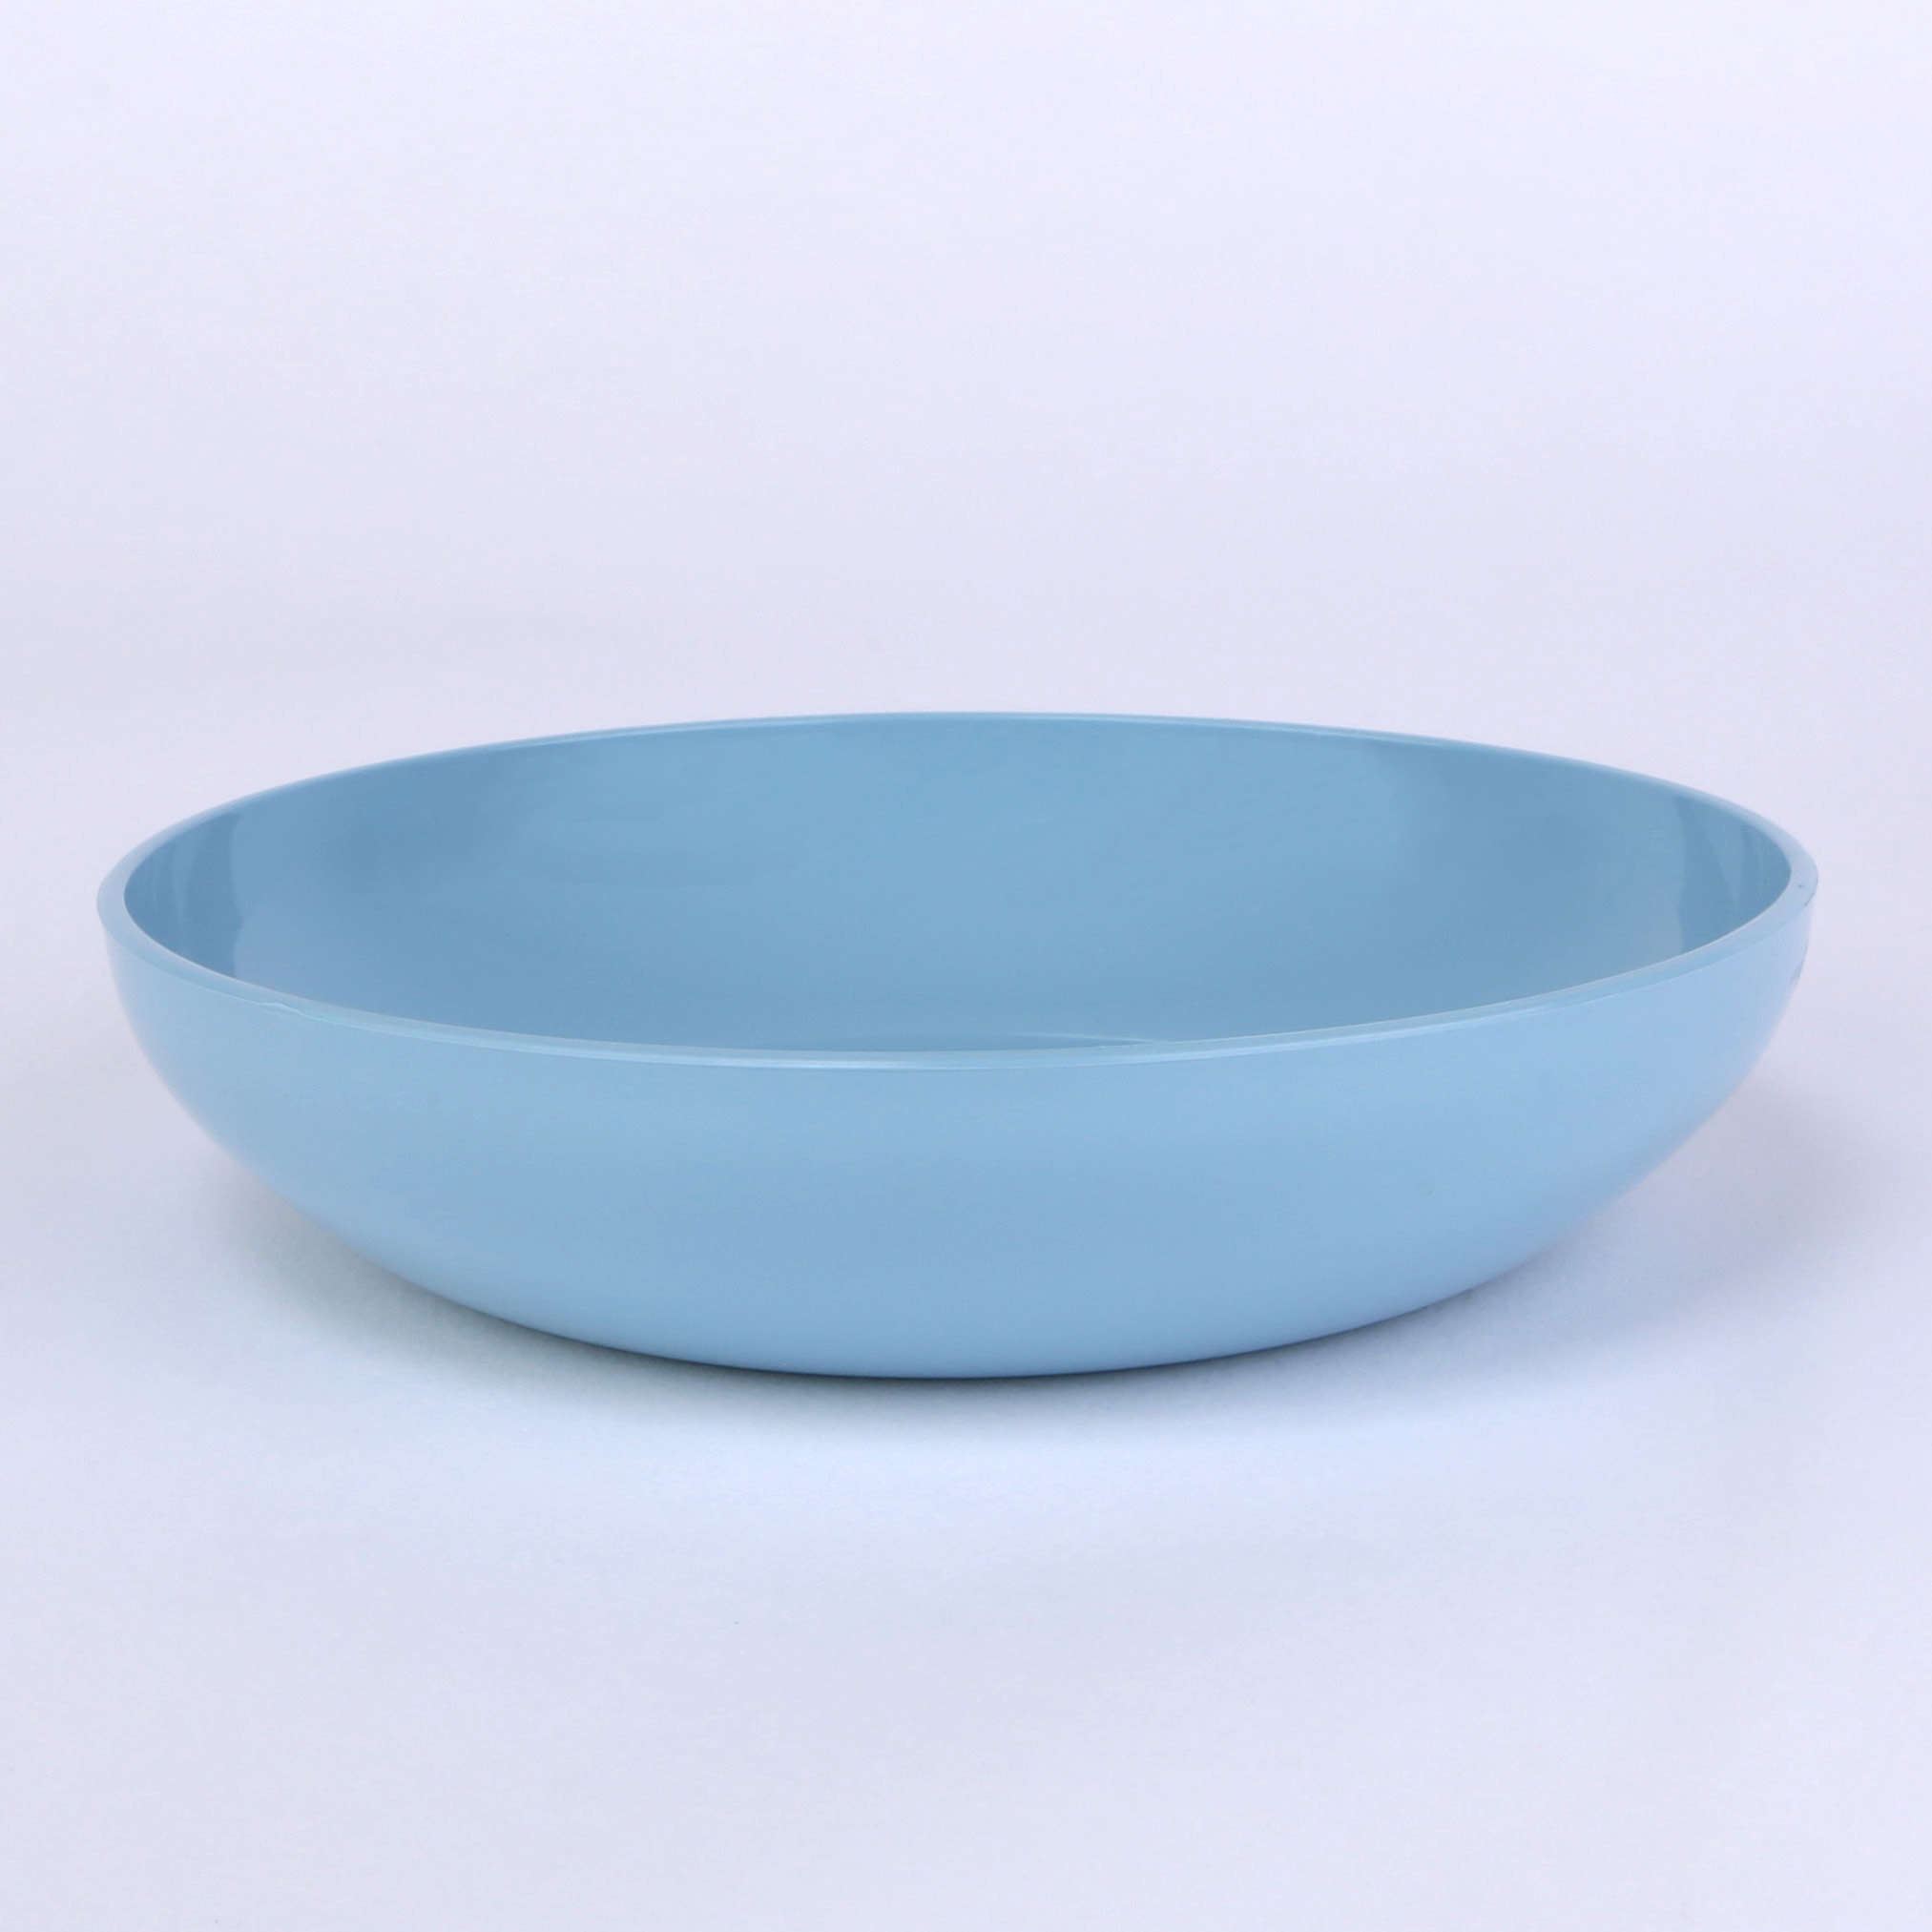 vaLon Zephyr Flache Dessertschale 13,5 cm aus schadstoffreiem Kunststoff in der Farbe pastellblau.